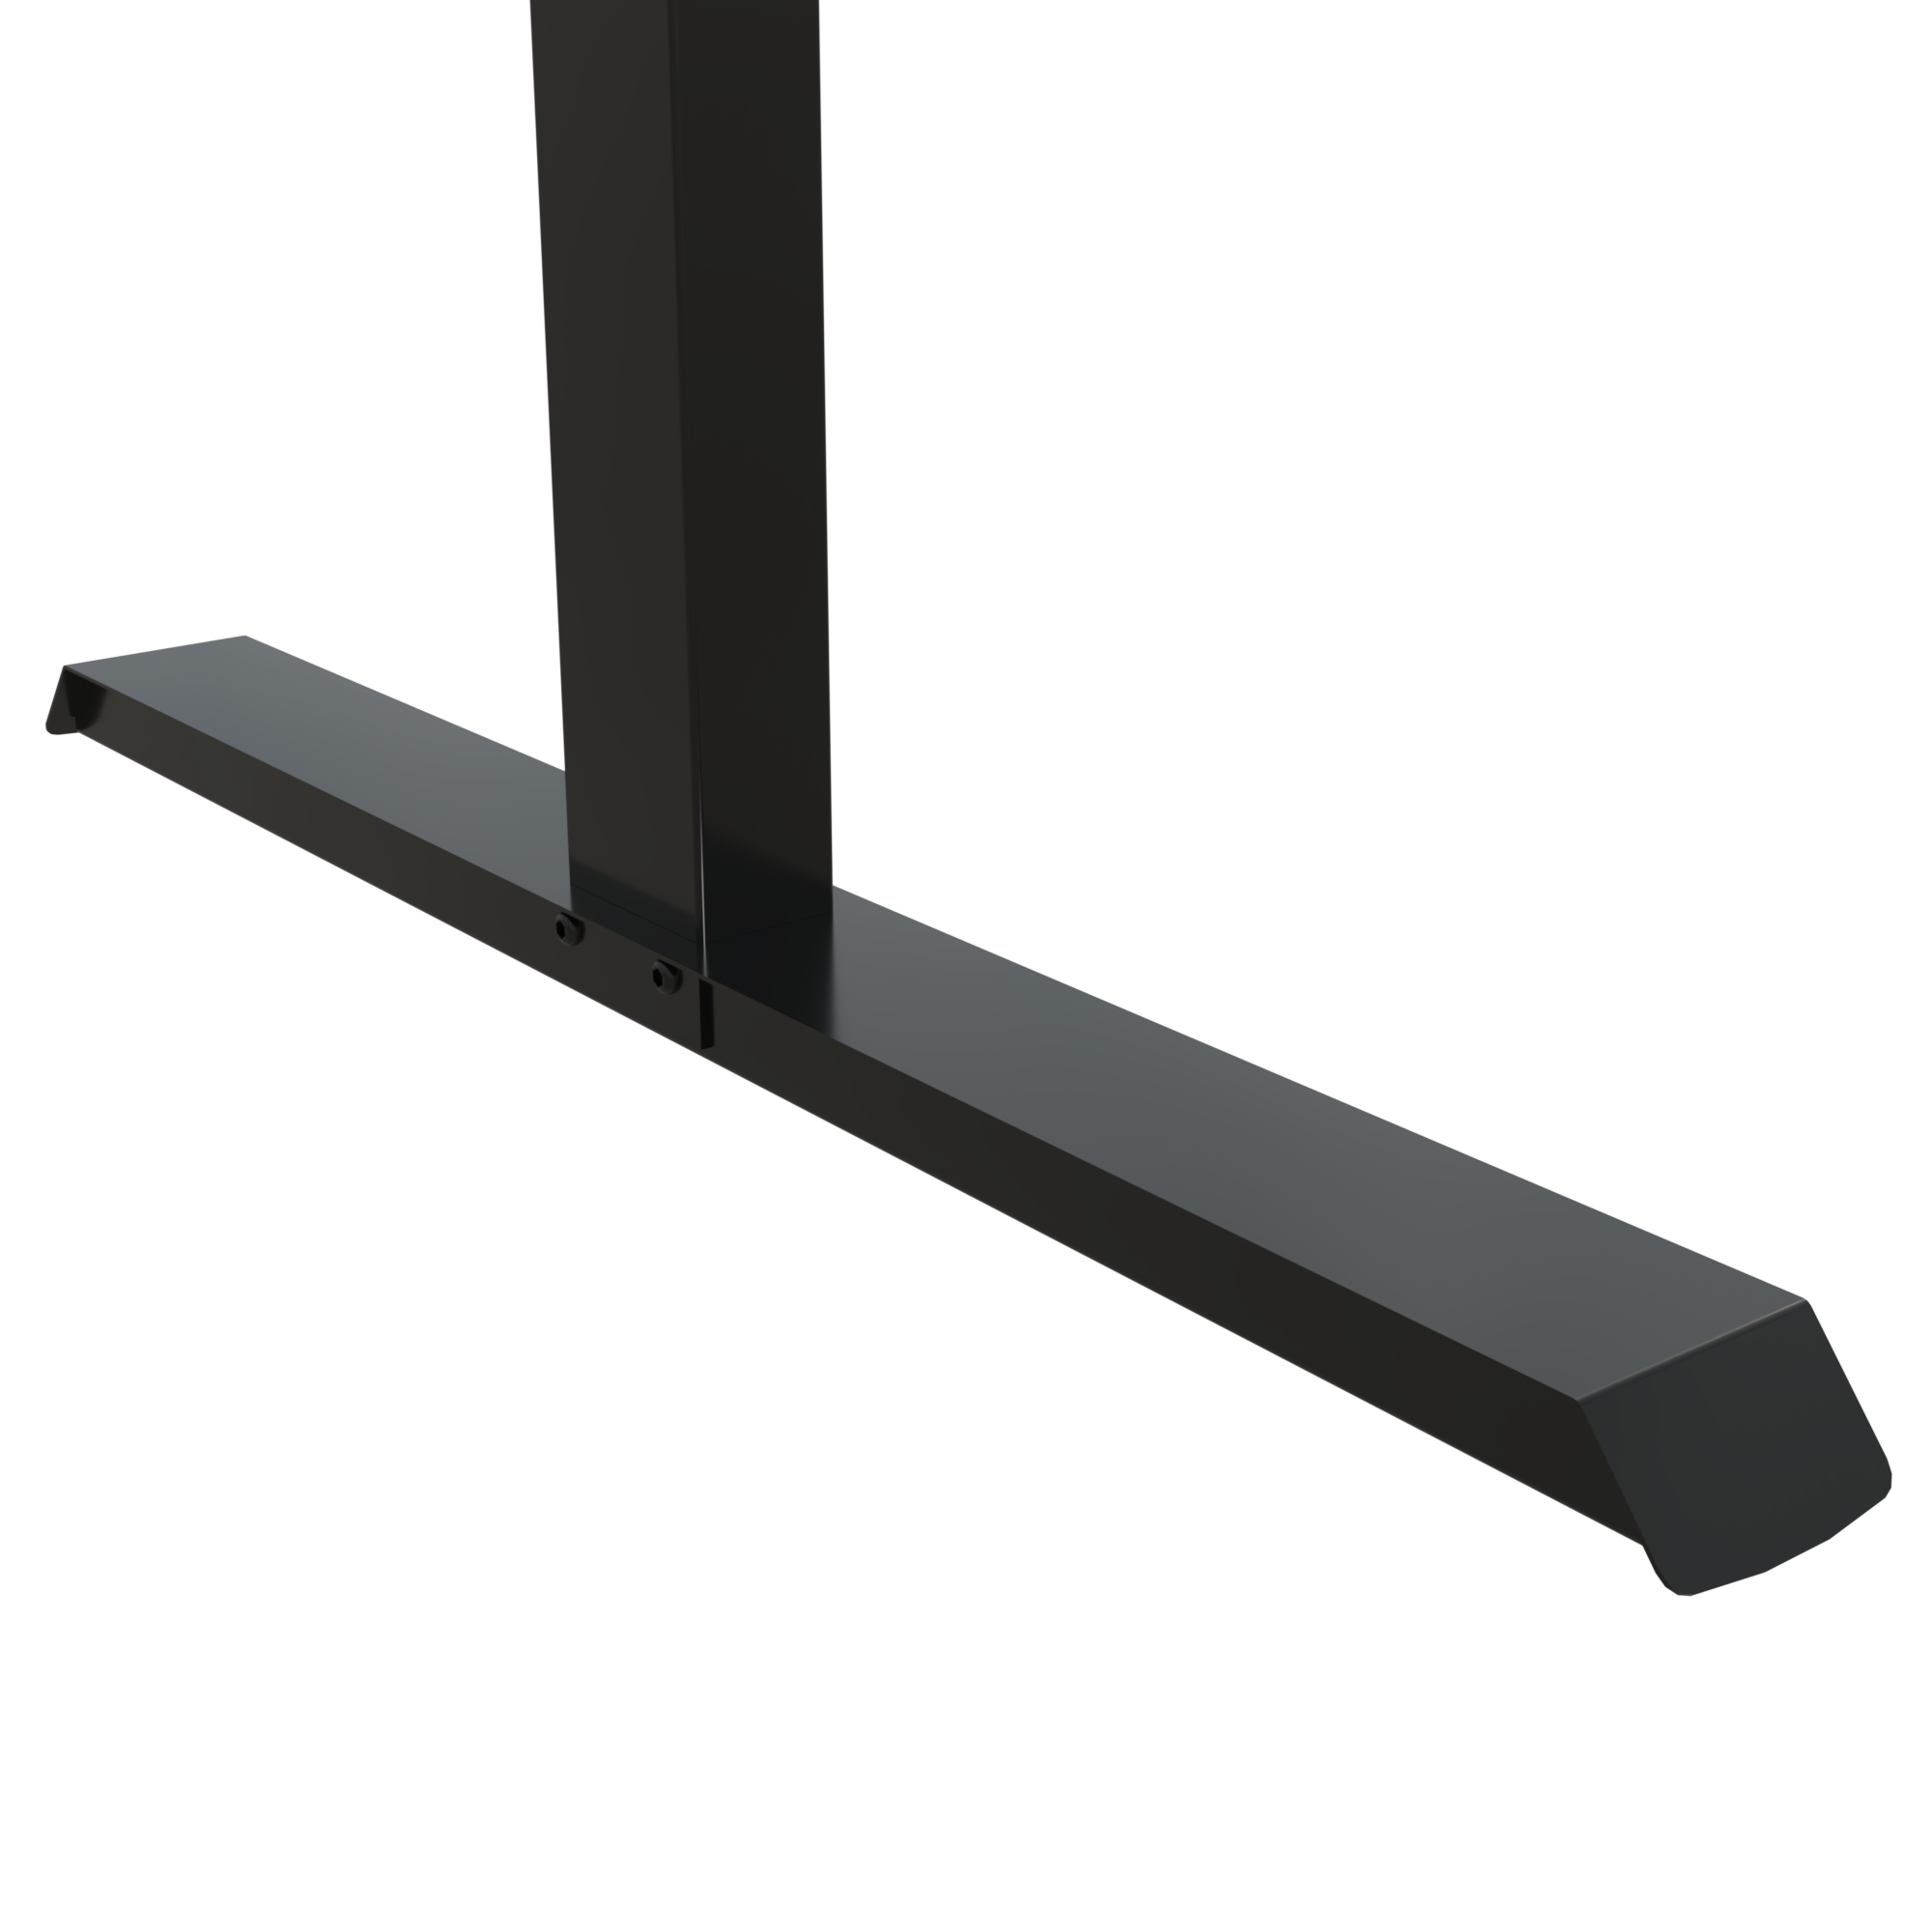 Electric Desk Frame | Width 092 cm | Black 